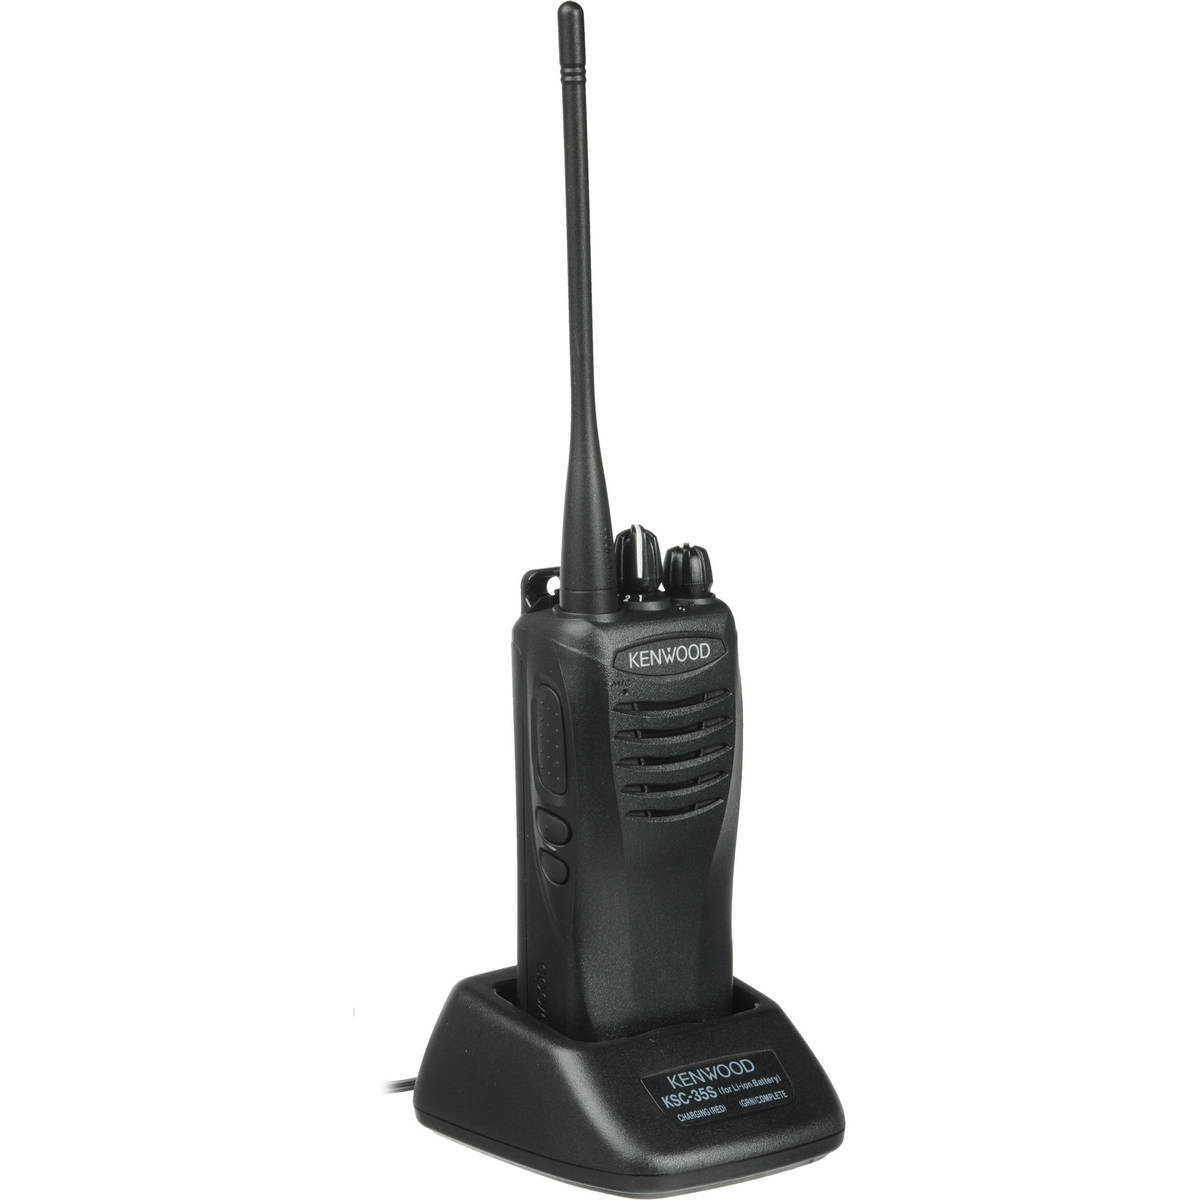 Radio KENWOOD TK-3402 Analógico UHF 450-520 MHz